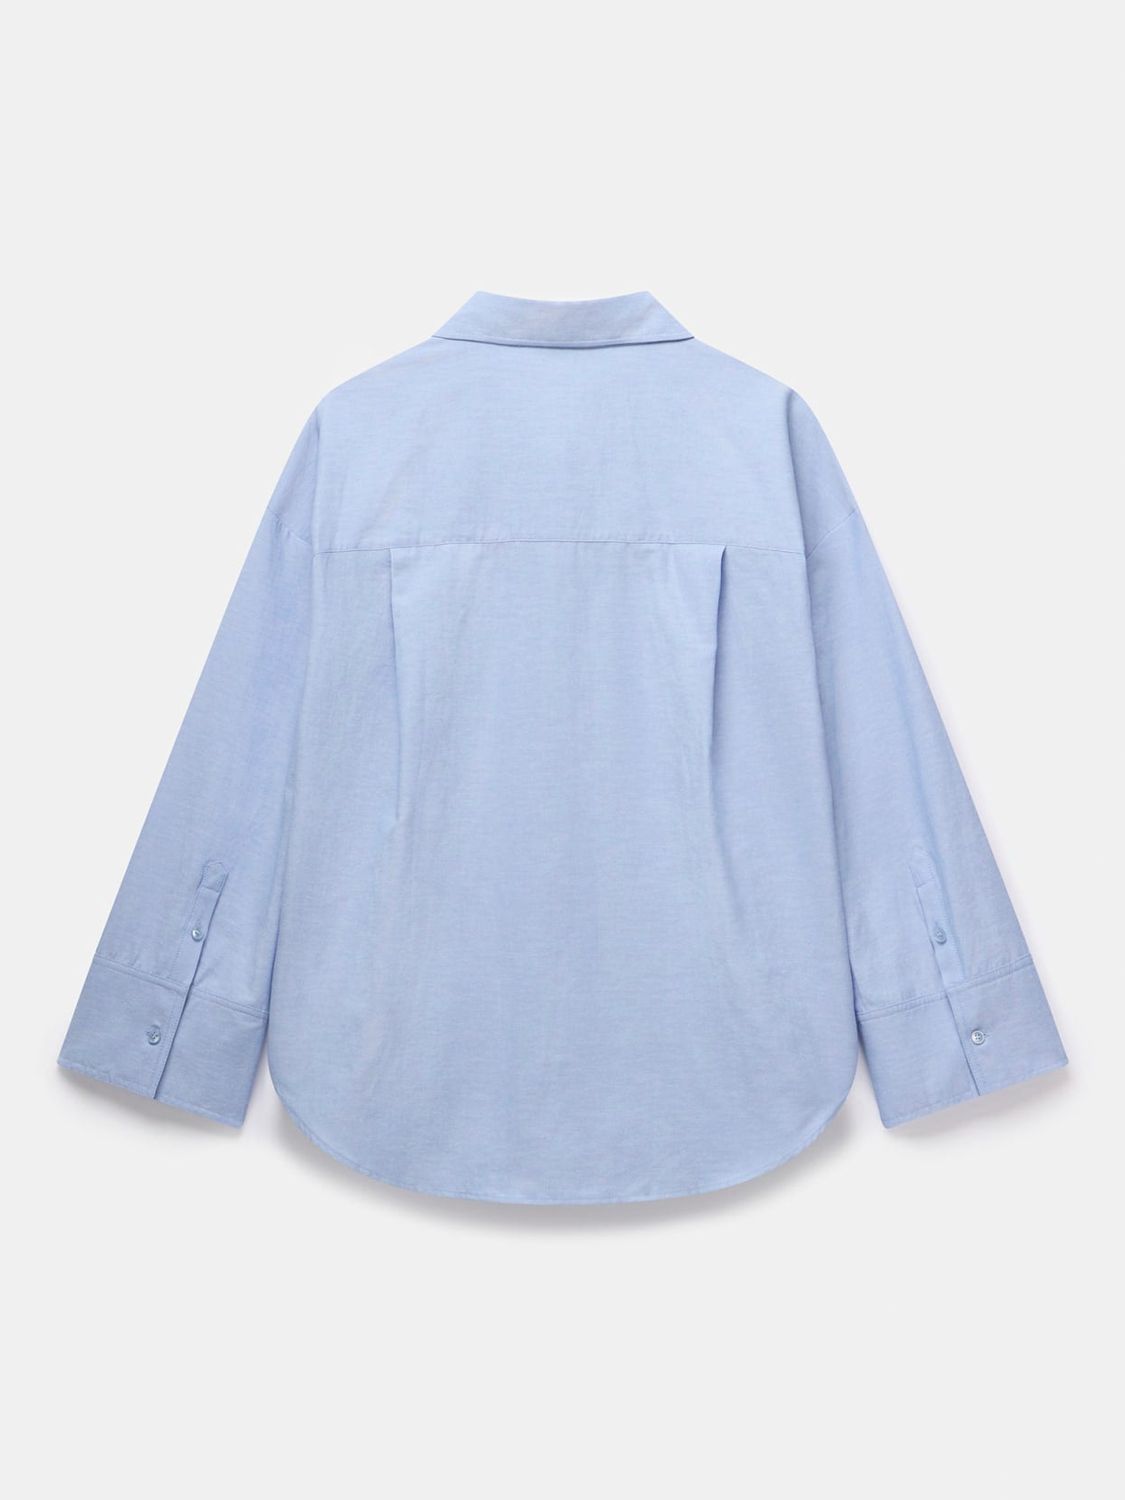 Mint Velvet Oversized Longline Shirt, Blue, M